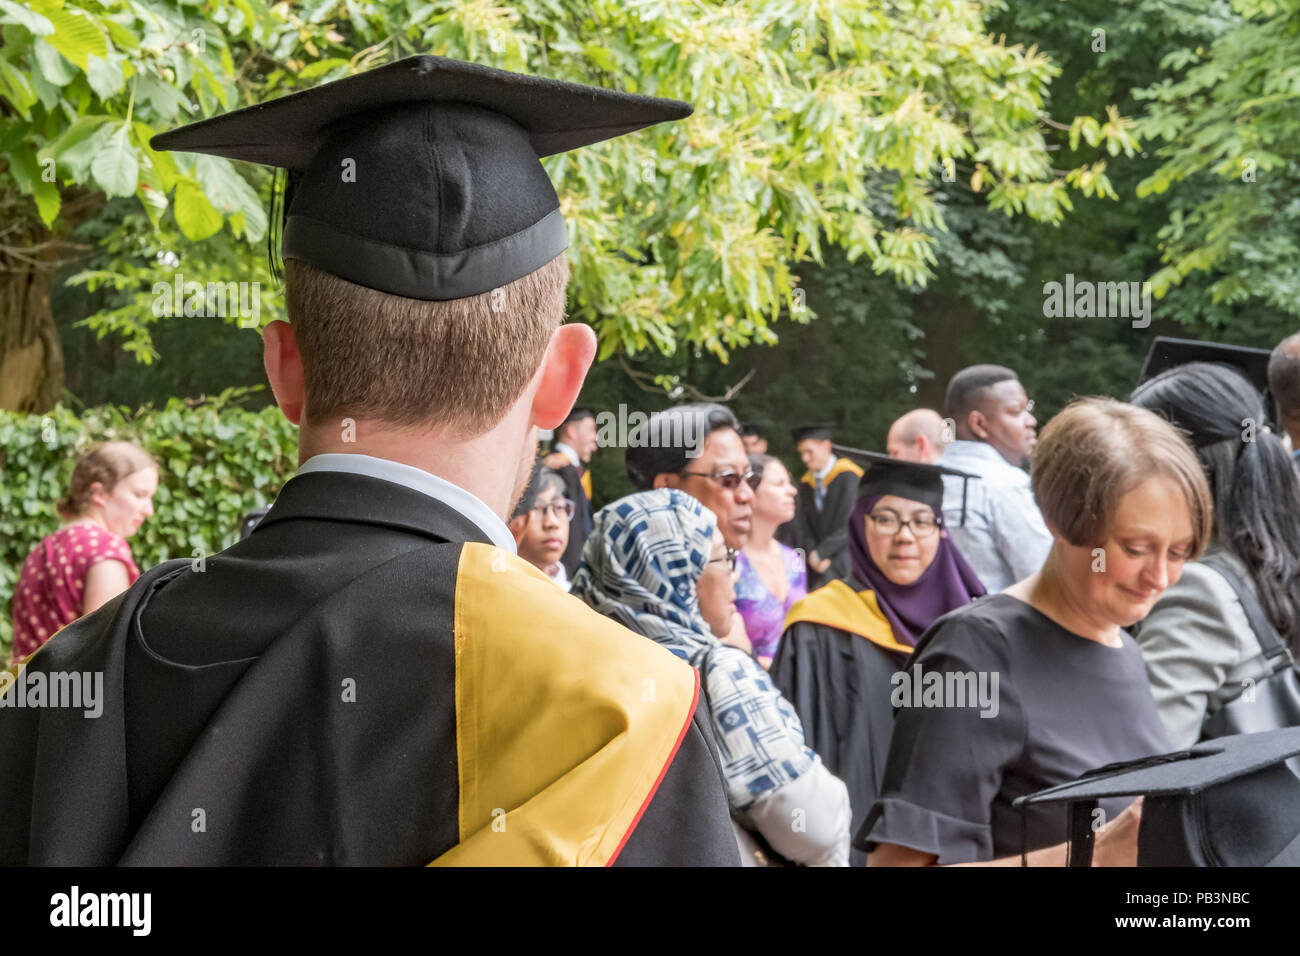 Junge männliche Graduierten Student sah seine Graduierung Kleid an einem Campus Graduierung Party zeigte verschiedene Eltern im Hintergrund. Stockfoto